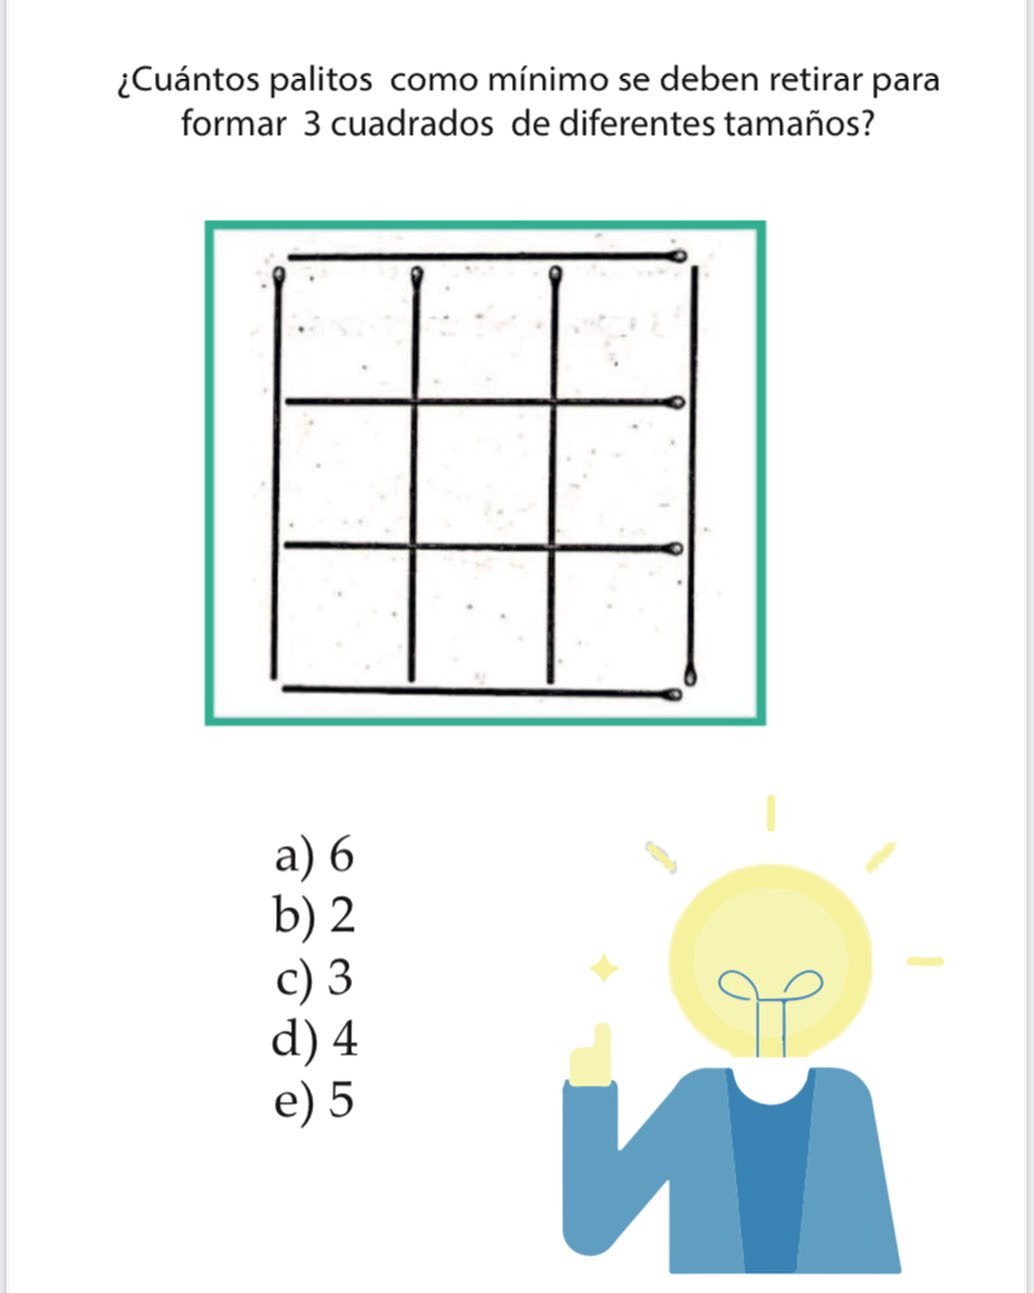 ¿Cuántos palitos como mínimo se deben retirar para formar 3 cuadrados de diferentes tamaños?